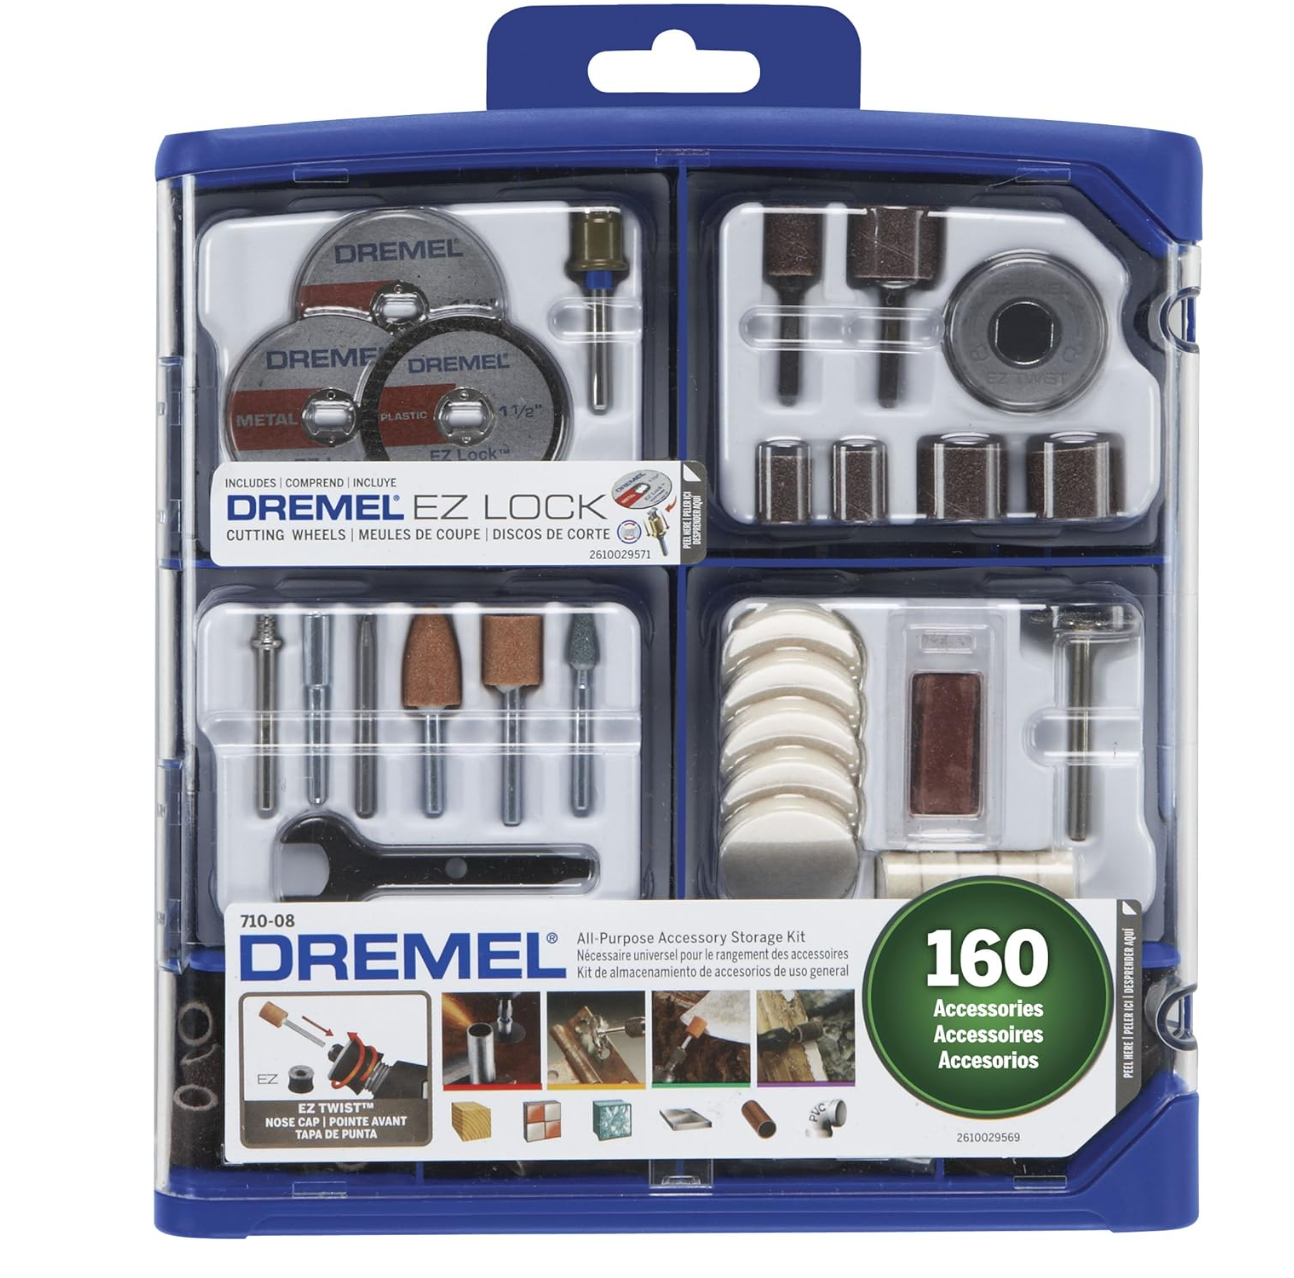 Dremel rotary tool accesory kit